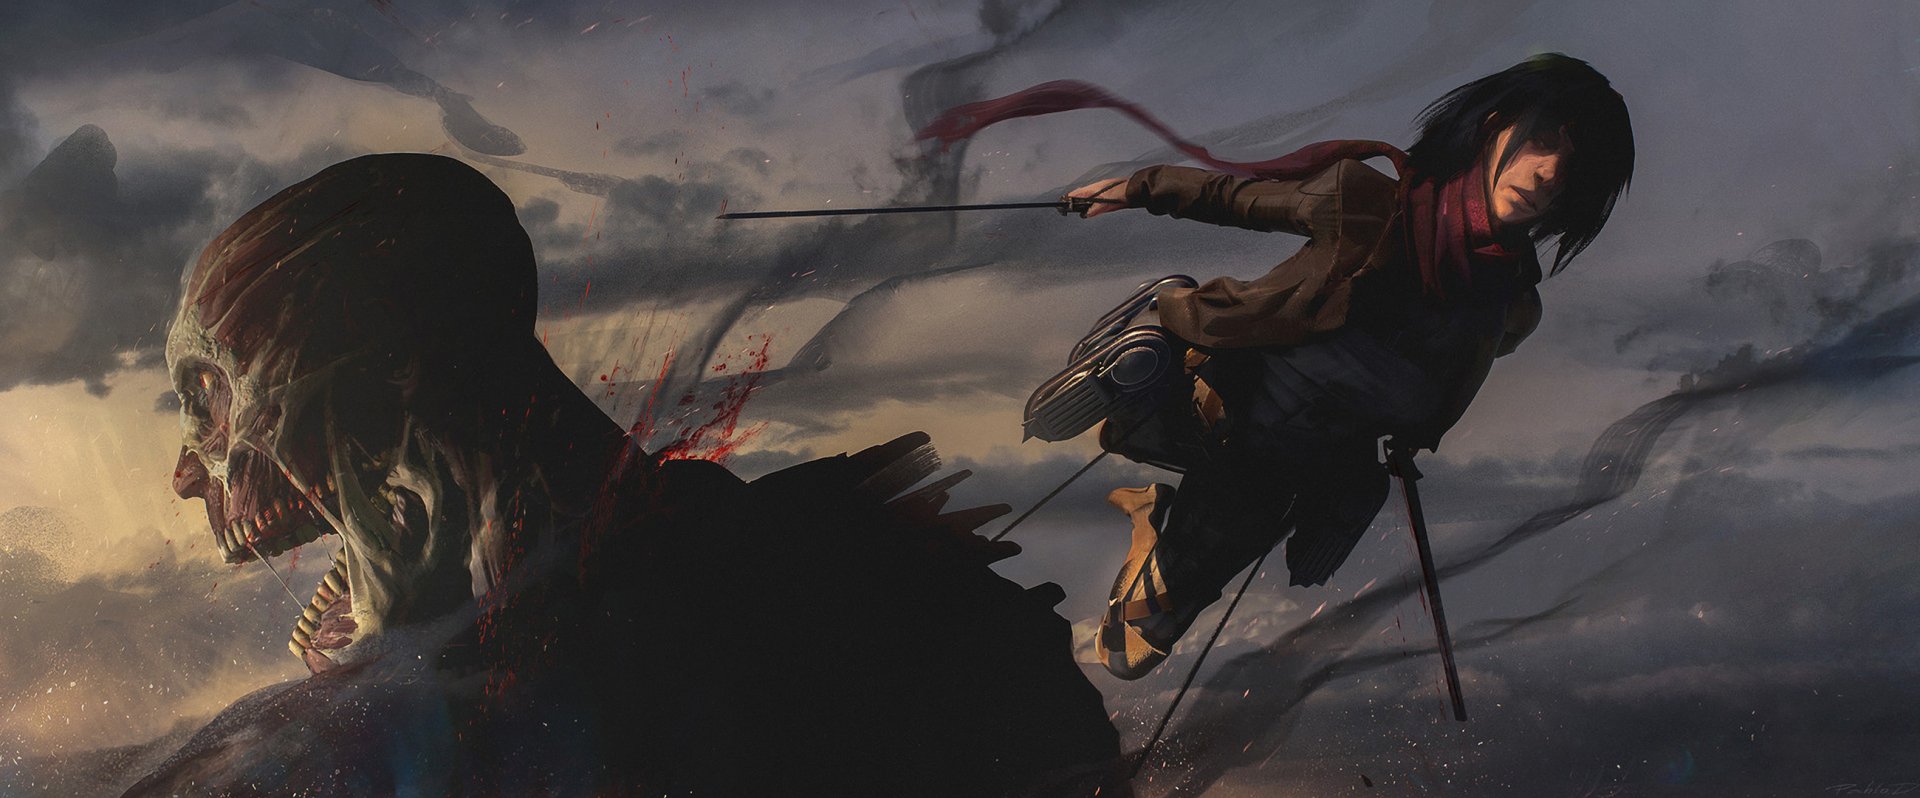 Download Colossal Titan Mikasa Ackerman Anime Attack On Titan  HD Wallpaper by Pablo Dominguez